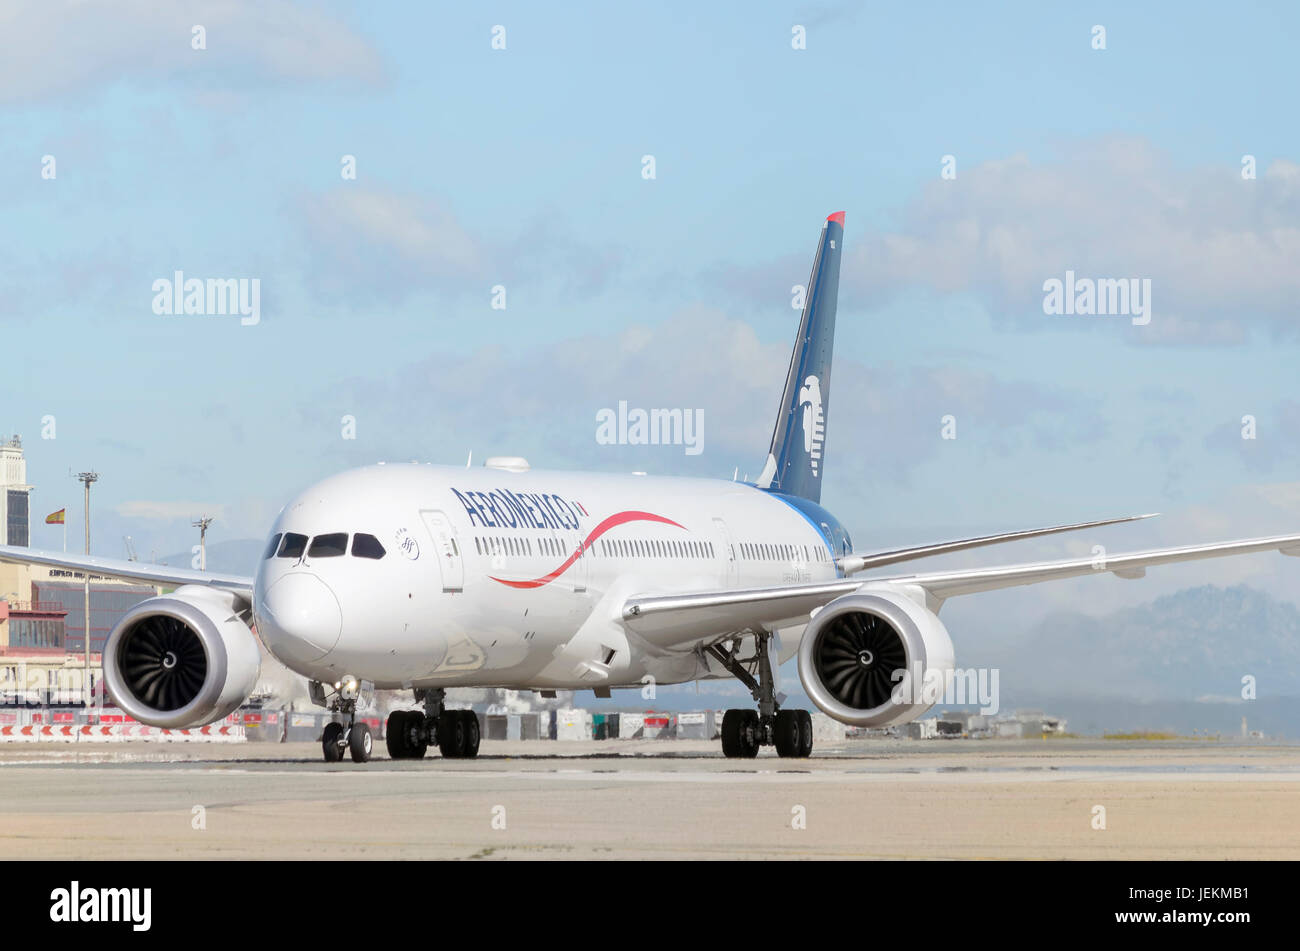 Aeromobili Boeing 787 Dreamliner della compagnia aerea Aeromexico, è in arrivo al terminal passeggeri, dopo essere atterrato in Madrid - Barajas Airport Foto Stock